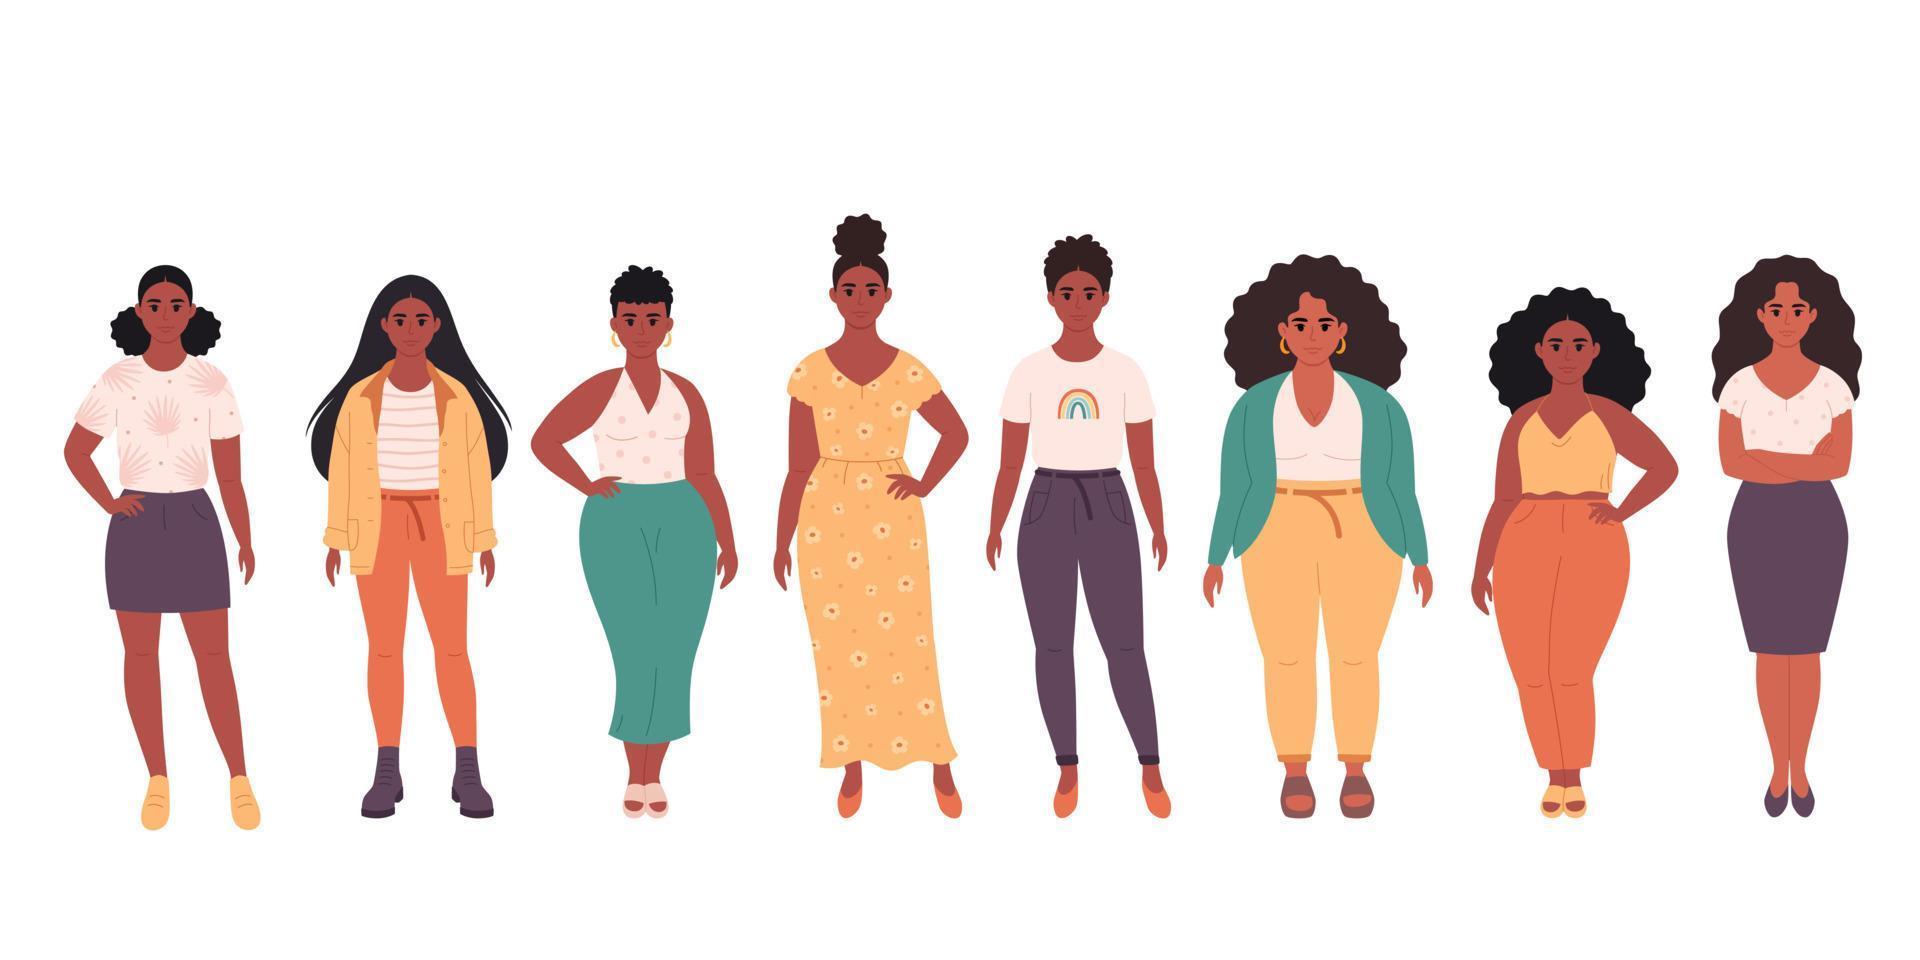 donne nere di diversi tipi di corporatura, acconciature, età. diversità sociale delle persone nella società moderna. abbigliamento casual alla moda. vettore